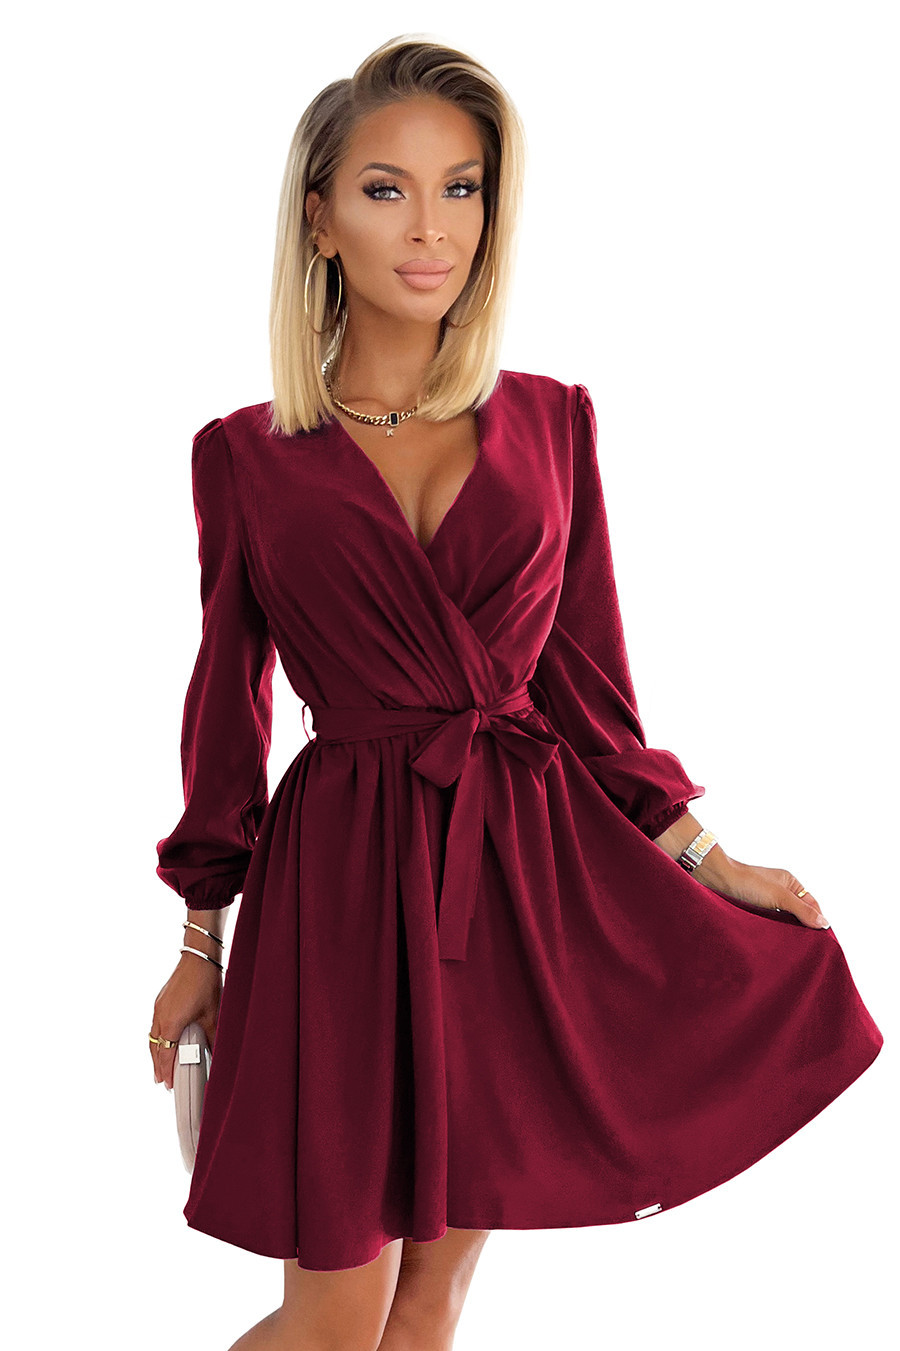 BINDY - Velmi žensky působící dámské šaty ve vínové bordó barvě s dekoltem 339-3 L/XL